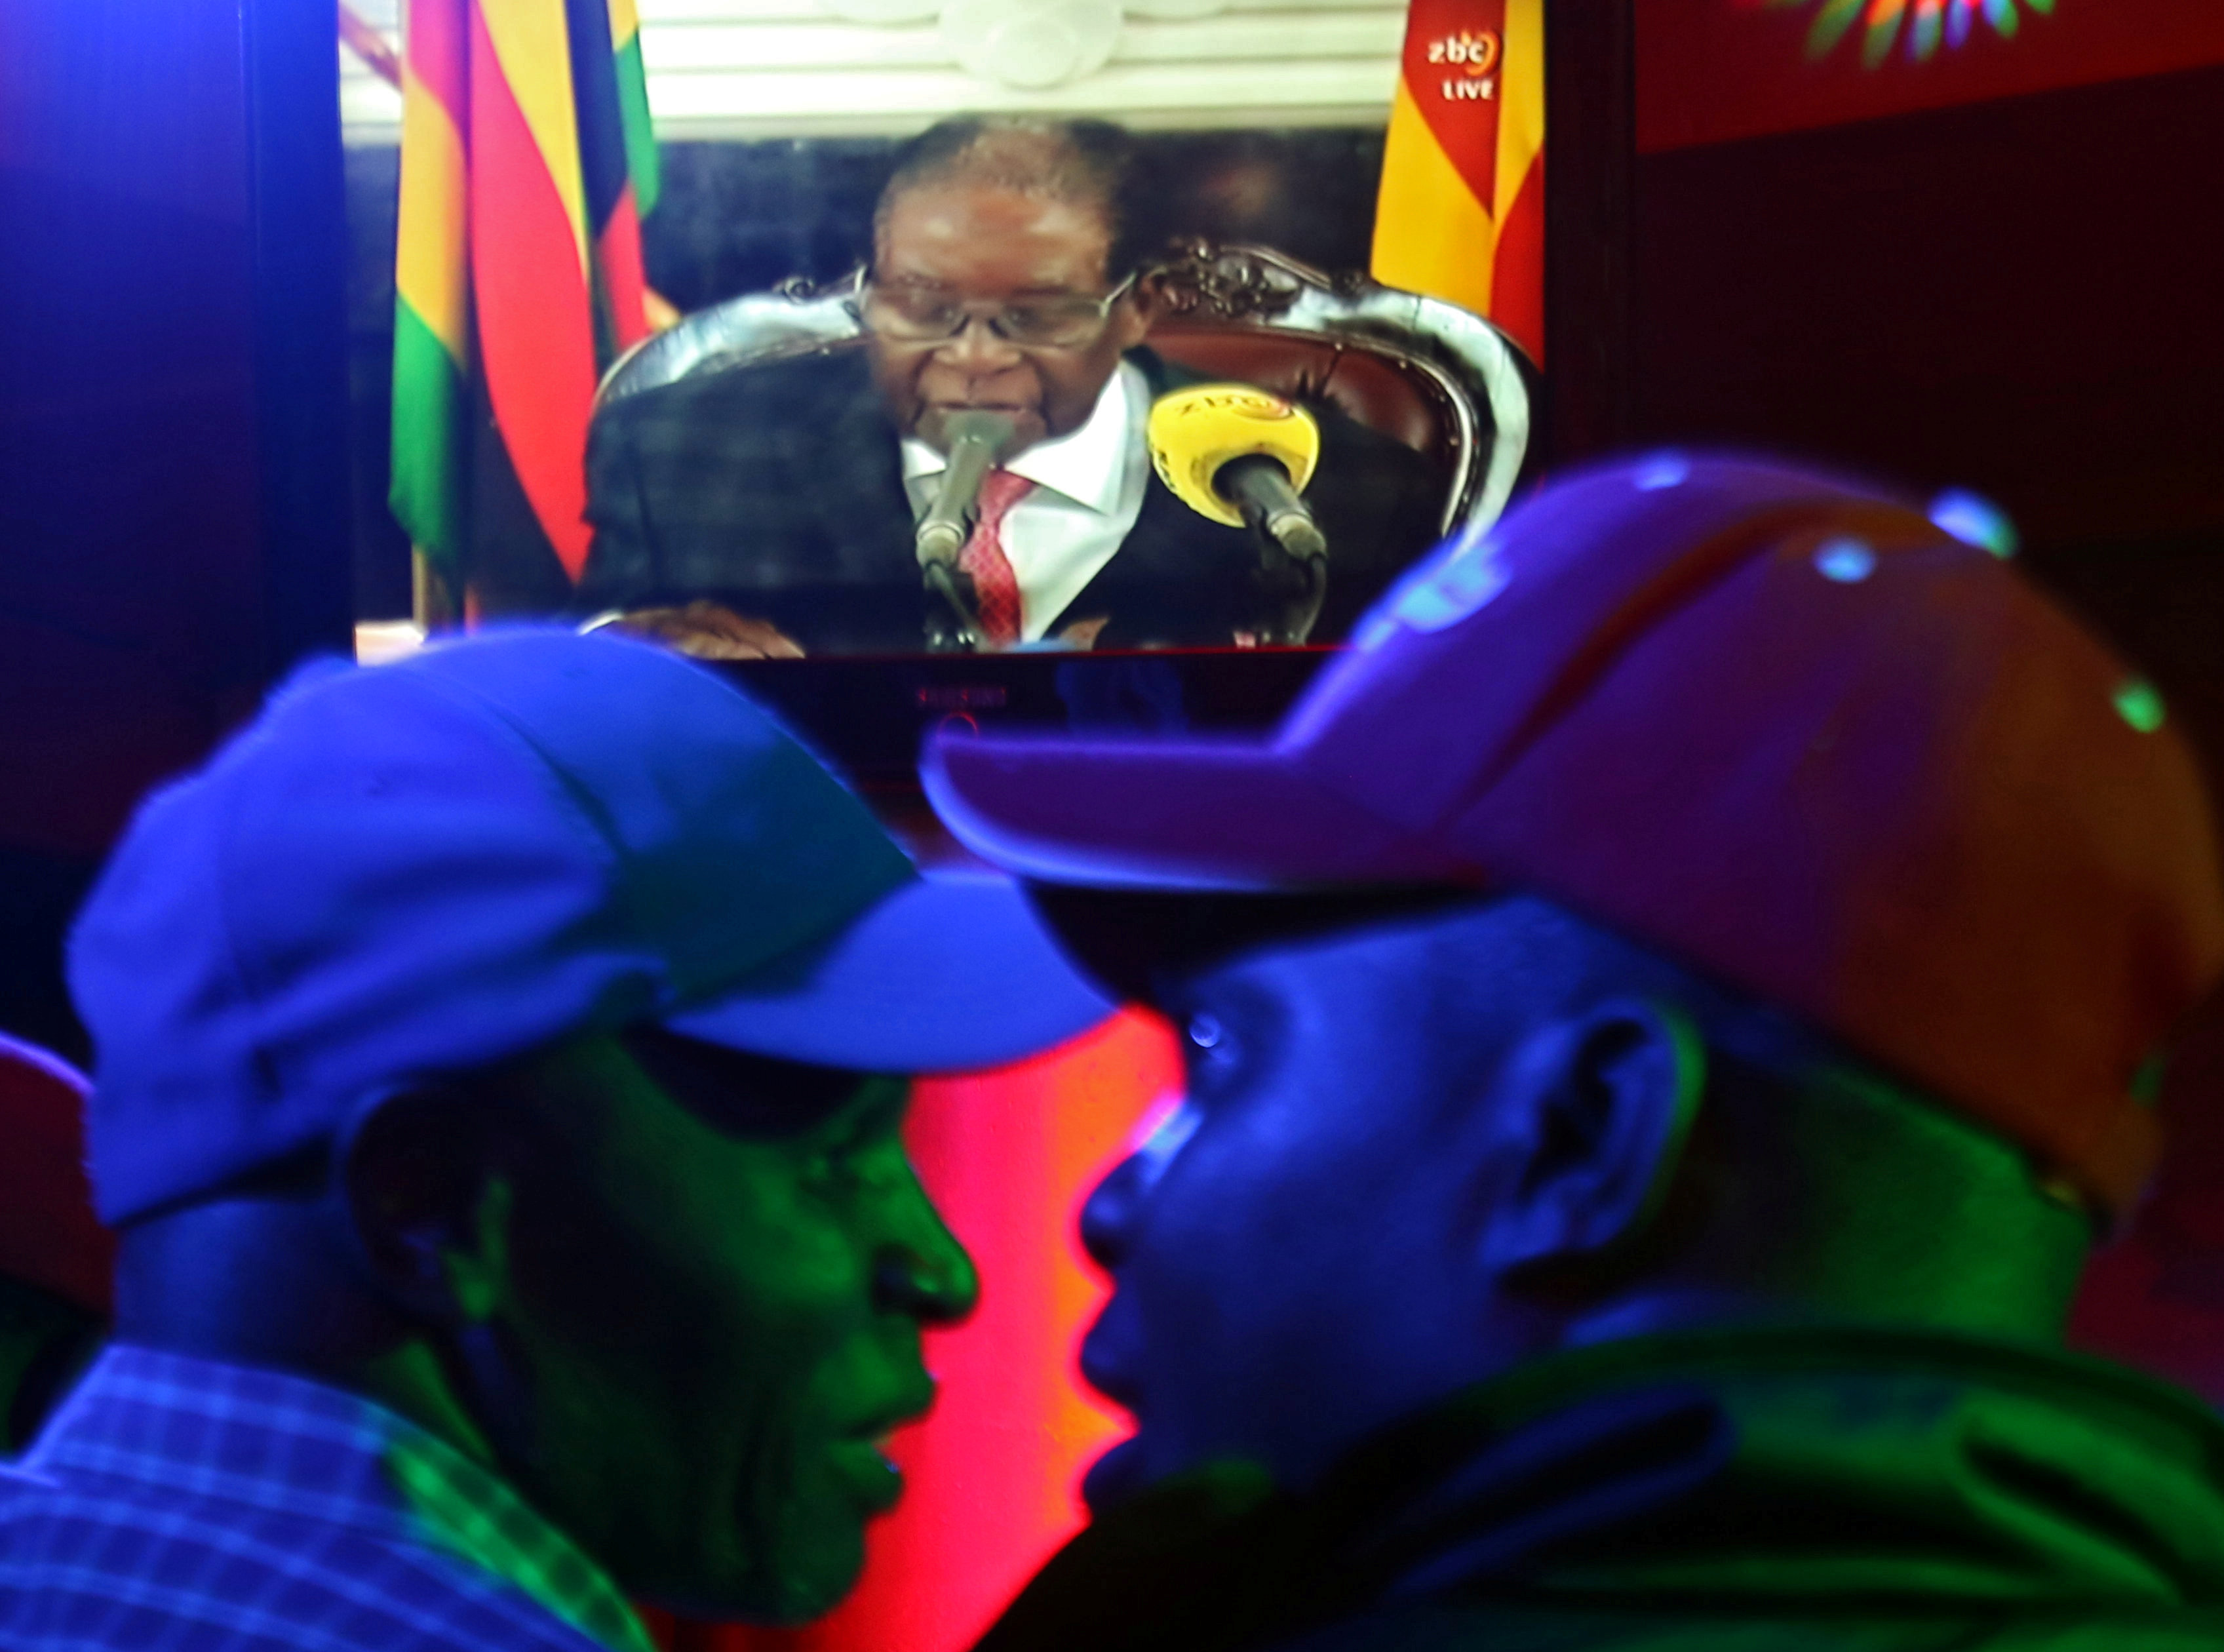 Ζιμπάμπουε: Ο πρόεδρος Μουγκάμπε συμφώνησε να παραιτηθεί